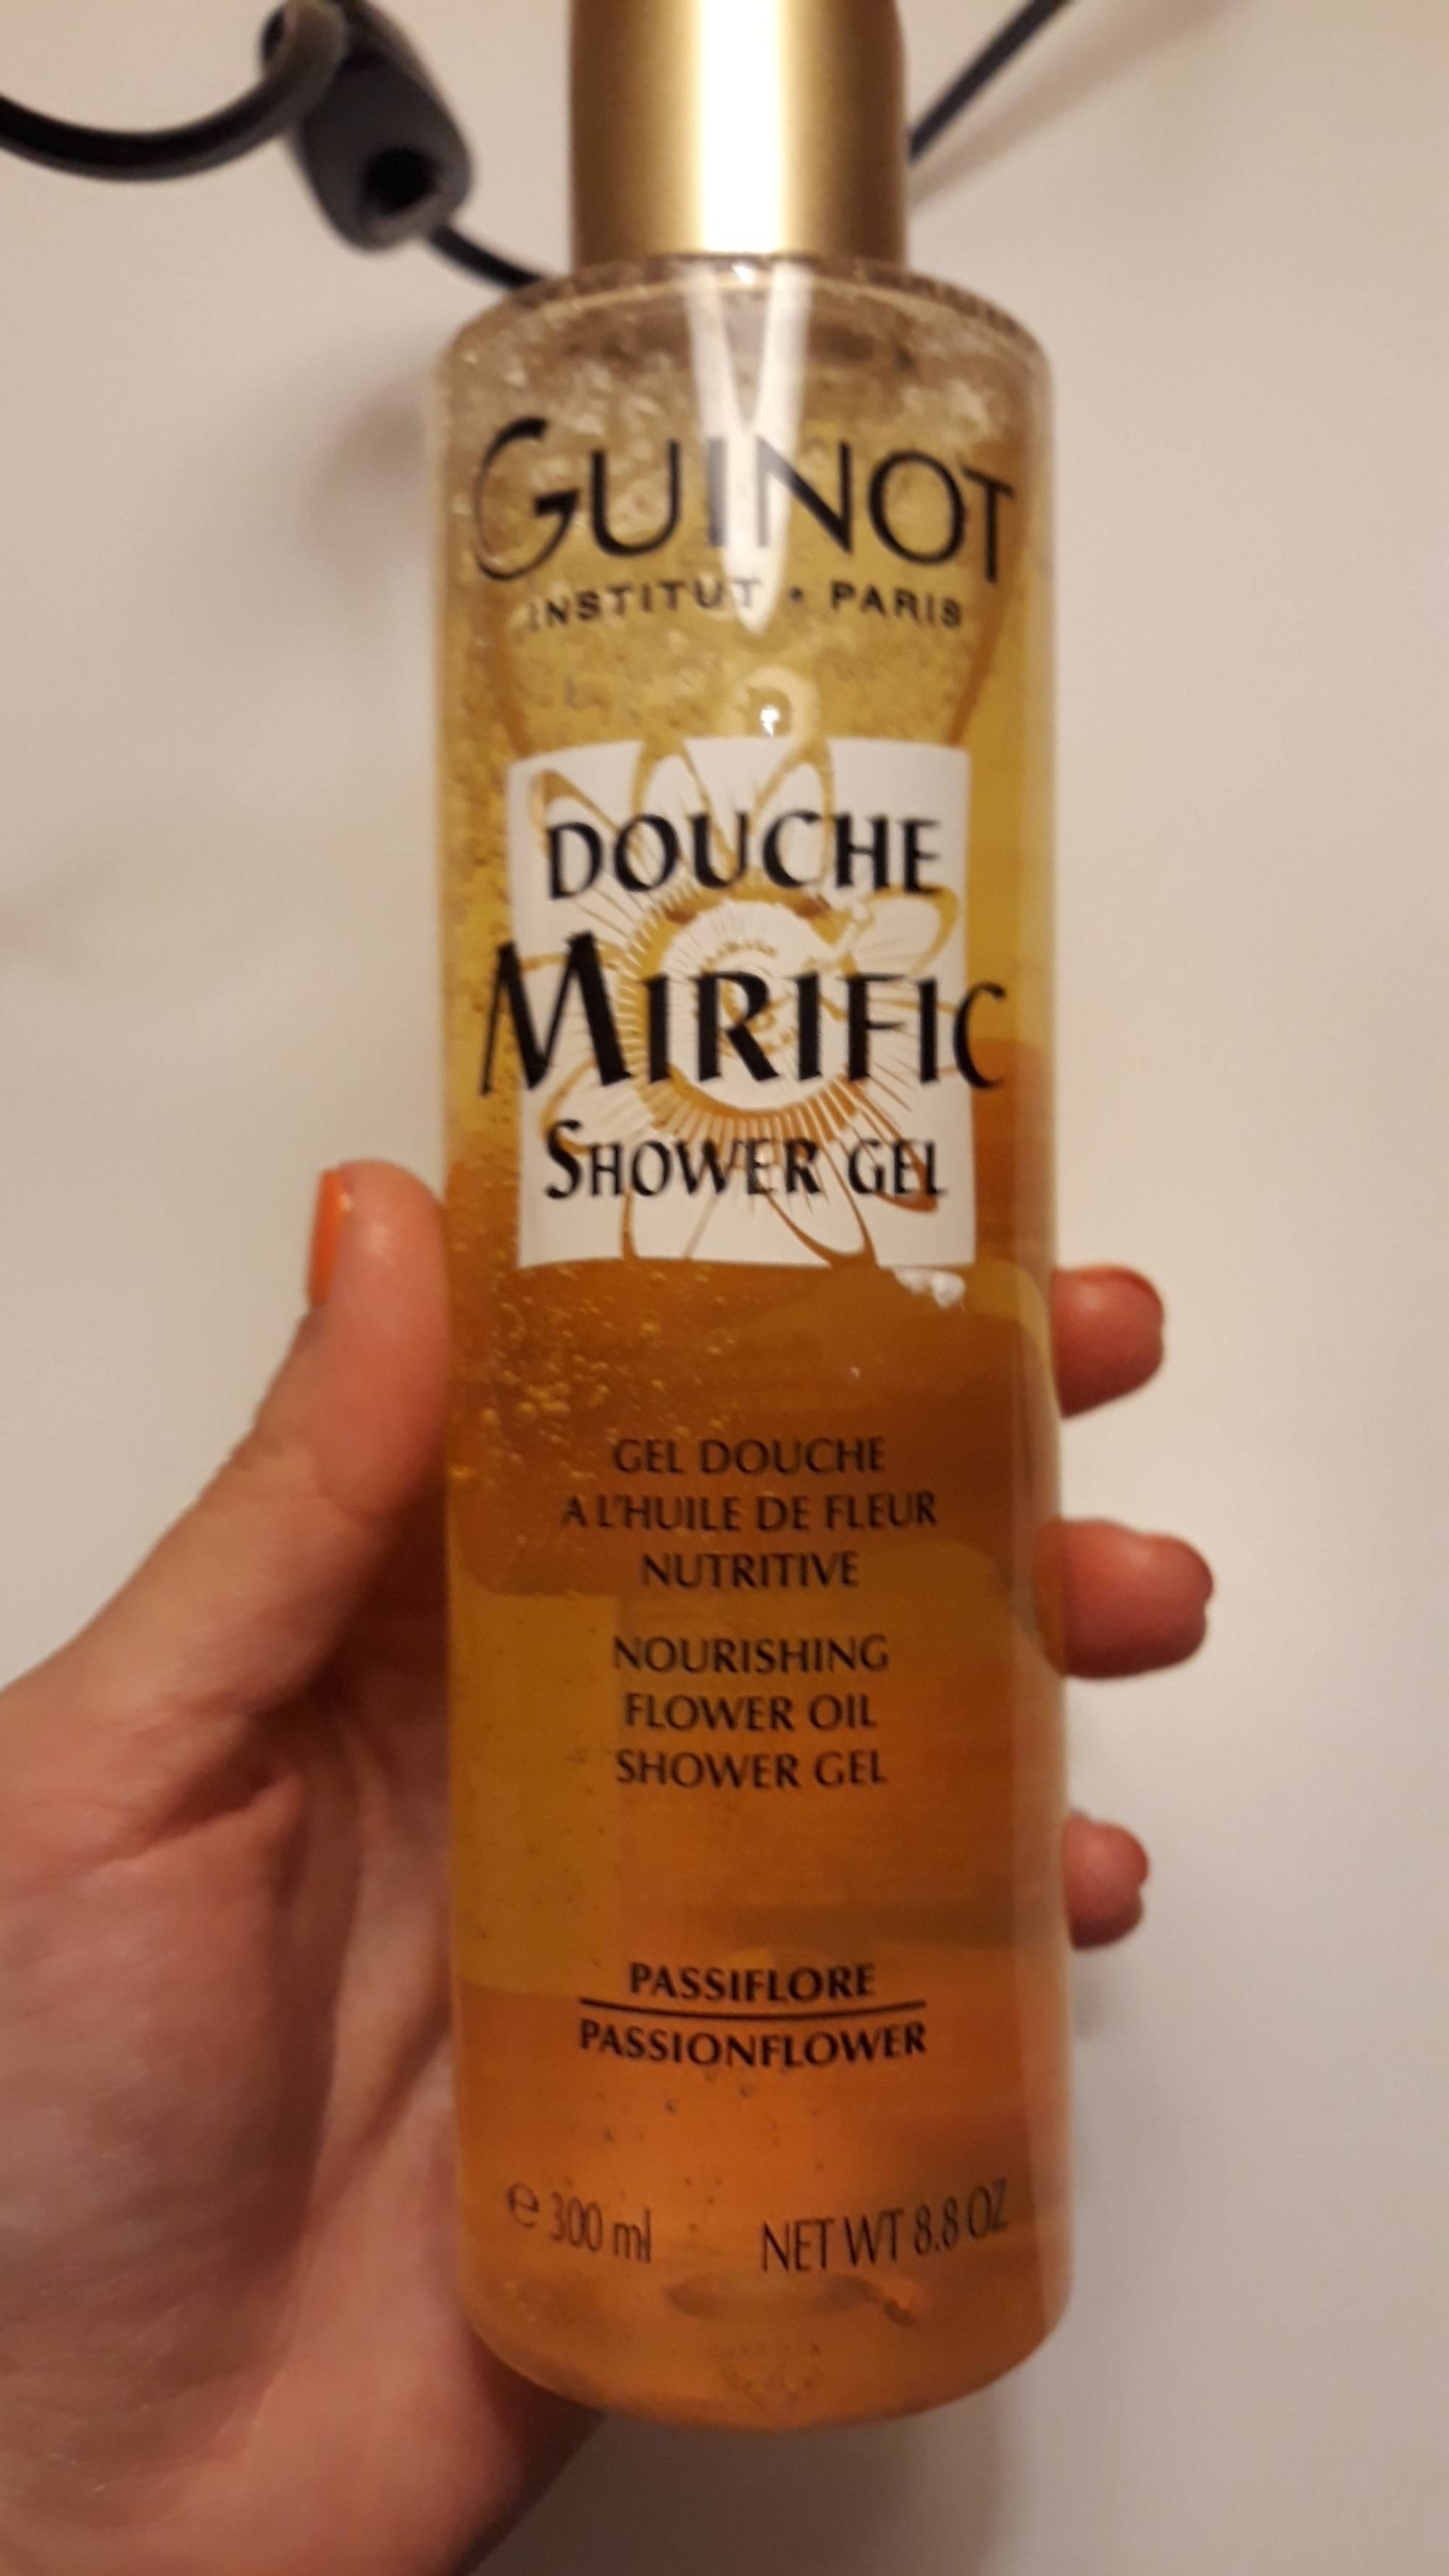 GUINOT - Douche mirific - Gel douche à l'huile de fleur